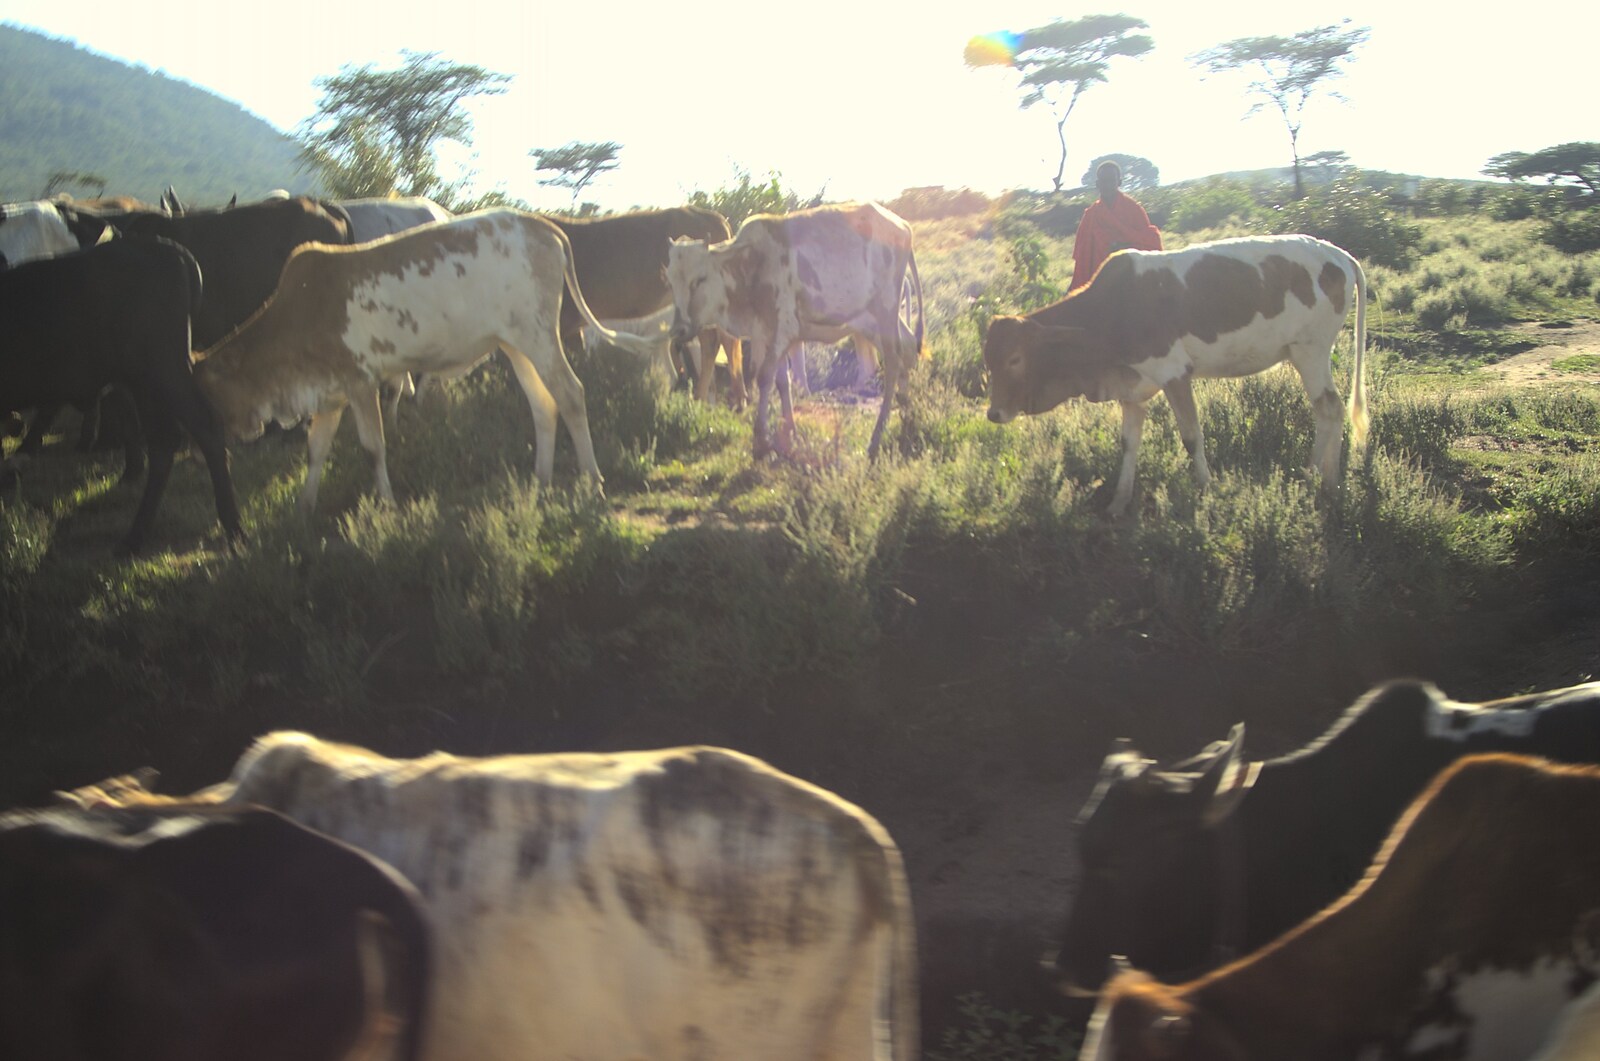 Maasai Mara Safari and a Maasai Village, Ololaimutia, Kenya - 5th November 2010: Next morning, cows mill around